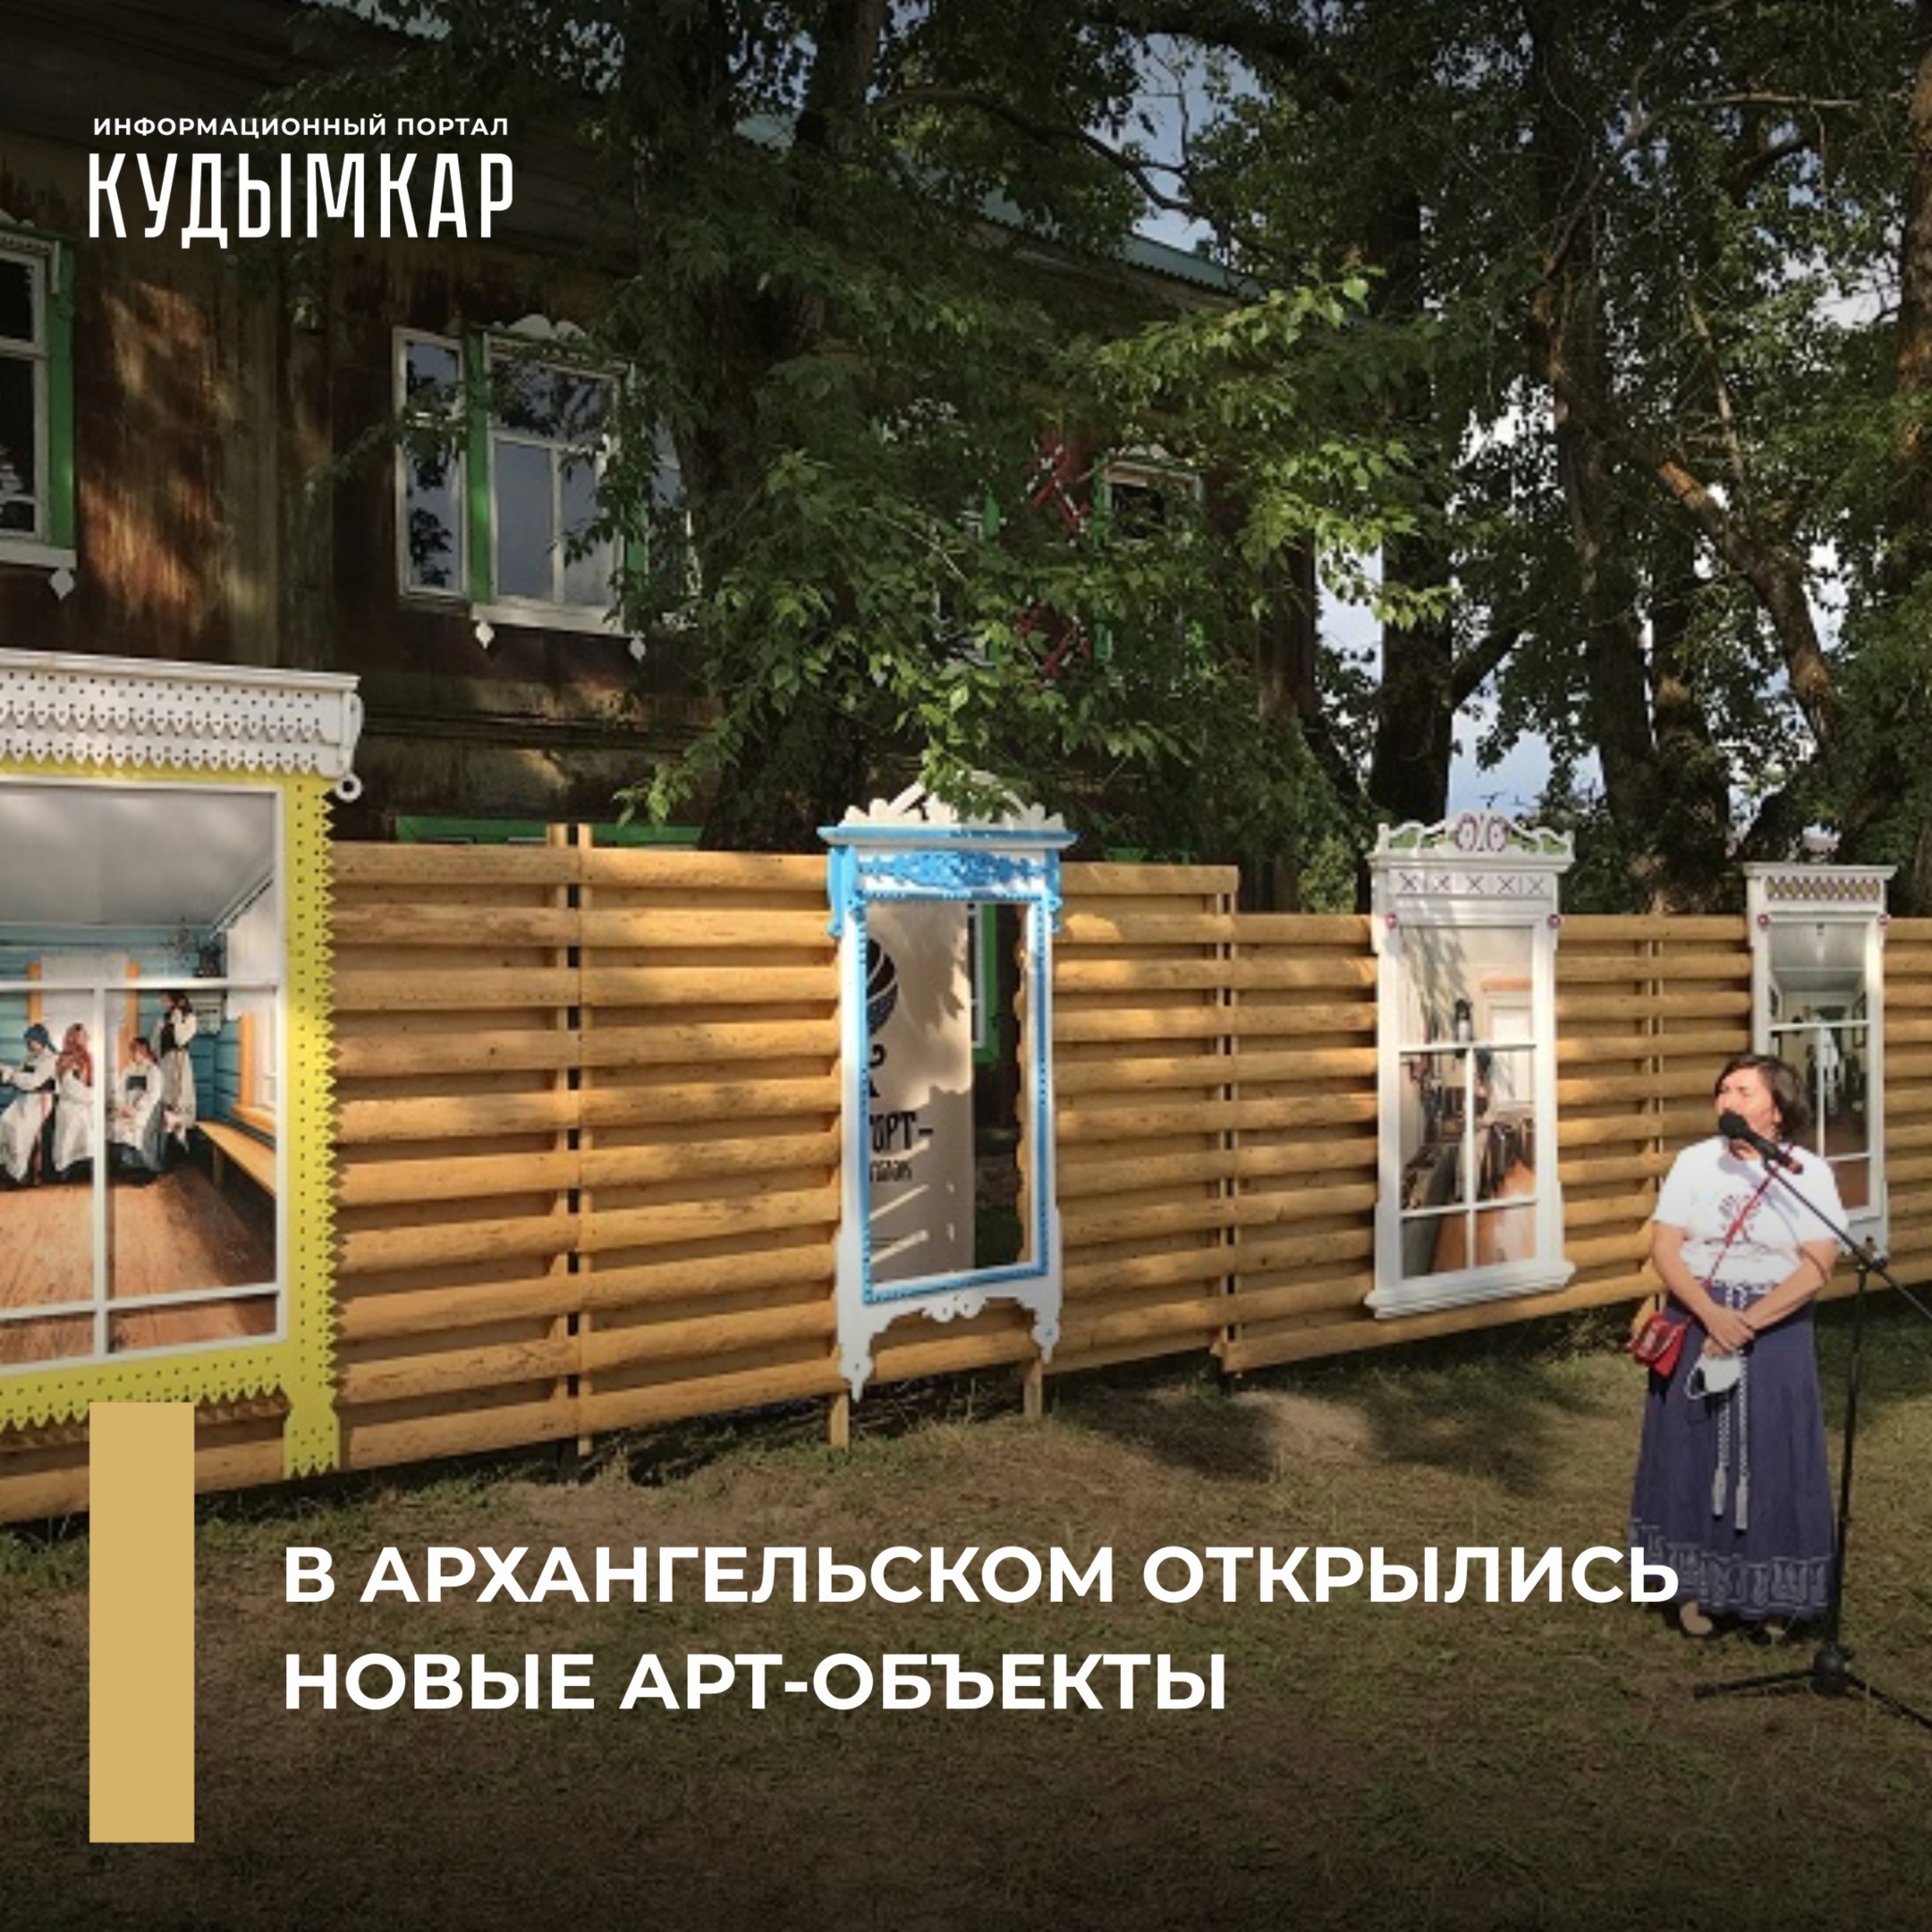 Информационный портал «Кудымкар» о галерее наличников в Архангельском